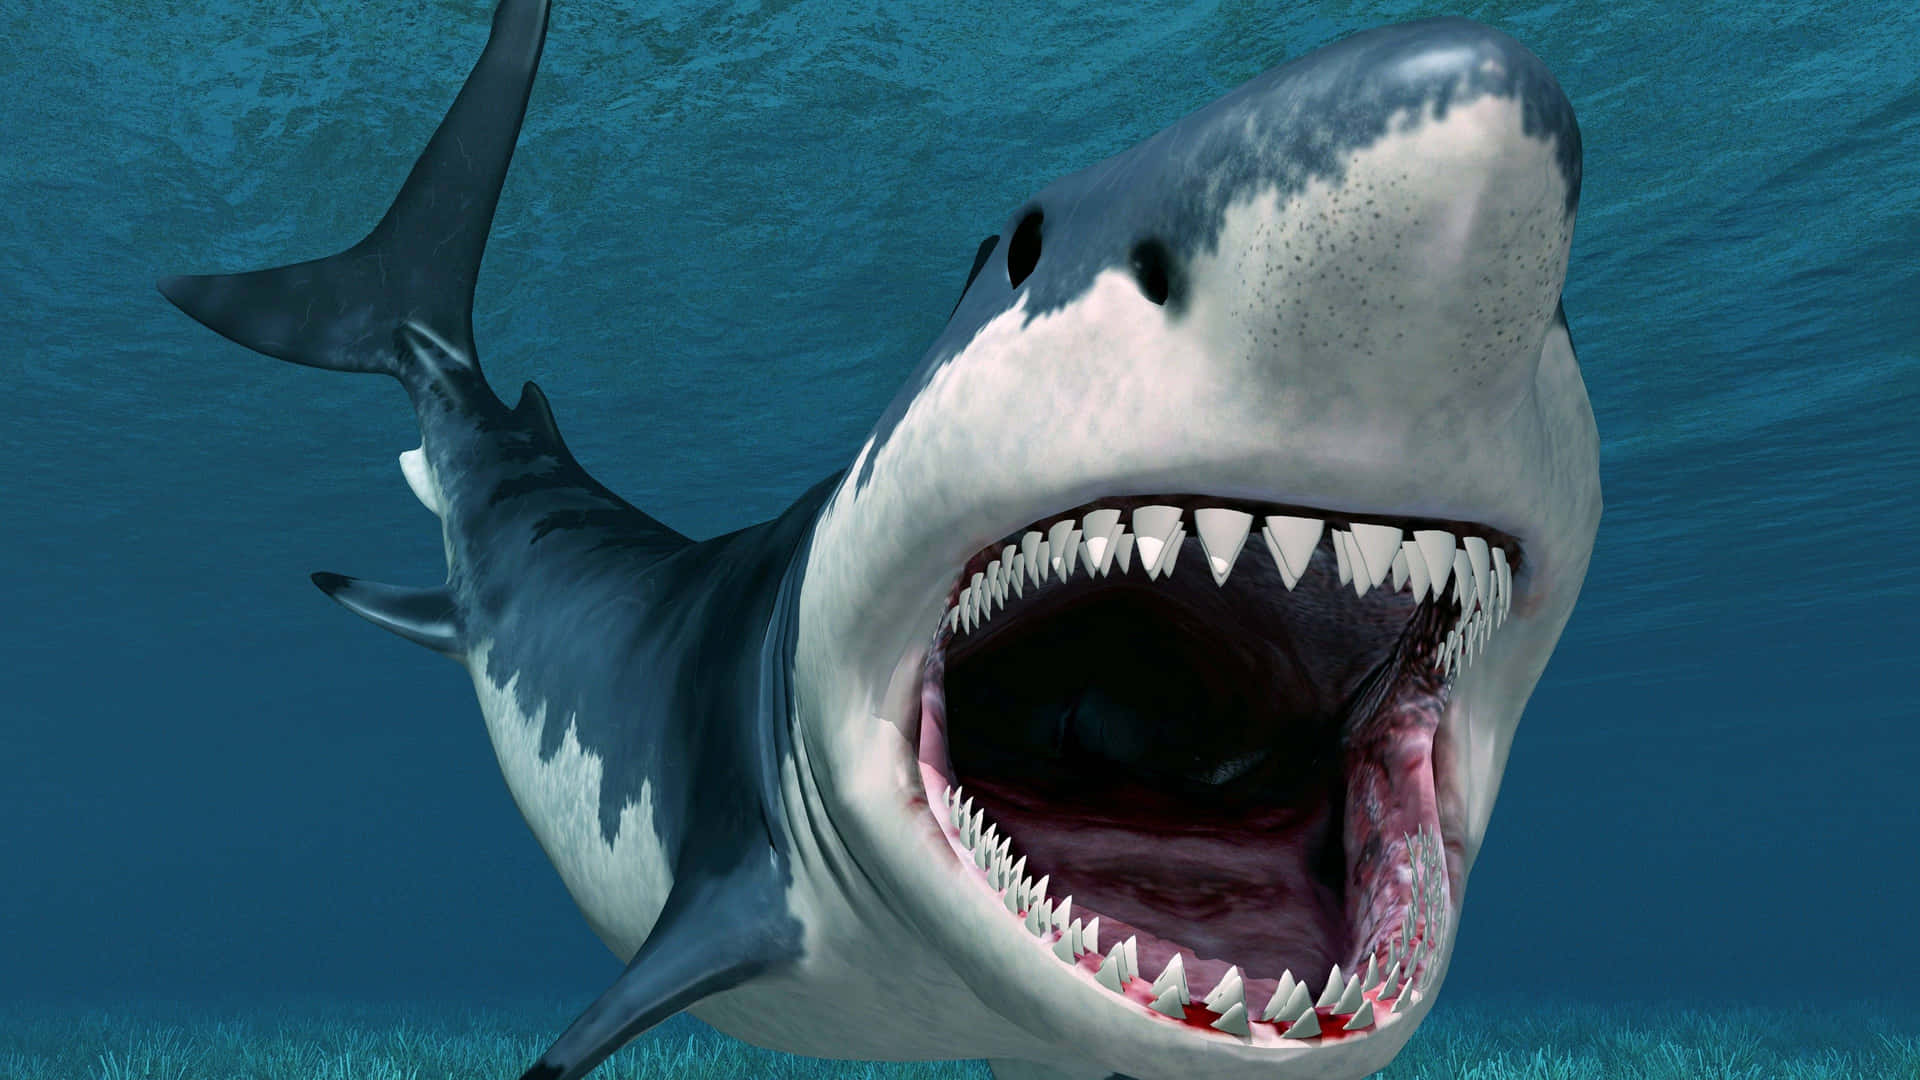 En kæmpe haj gemmer sig under overfladen, klar til at vise sig frem. Wallpaper